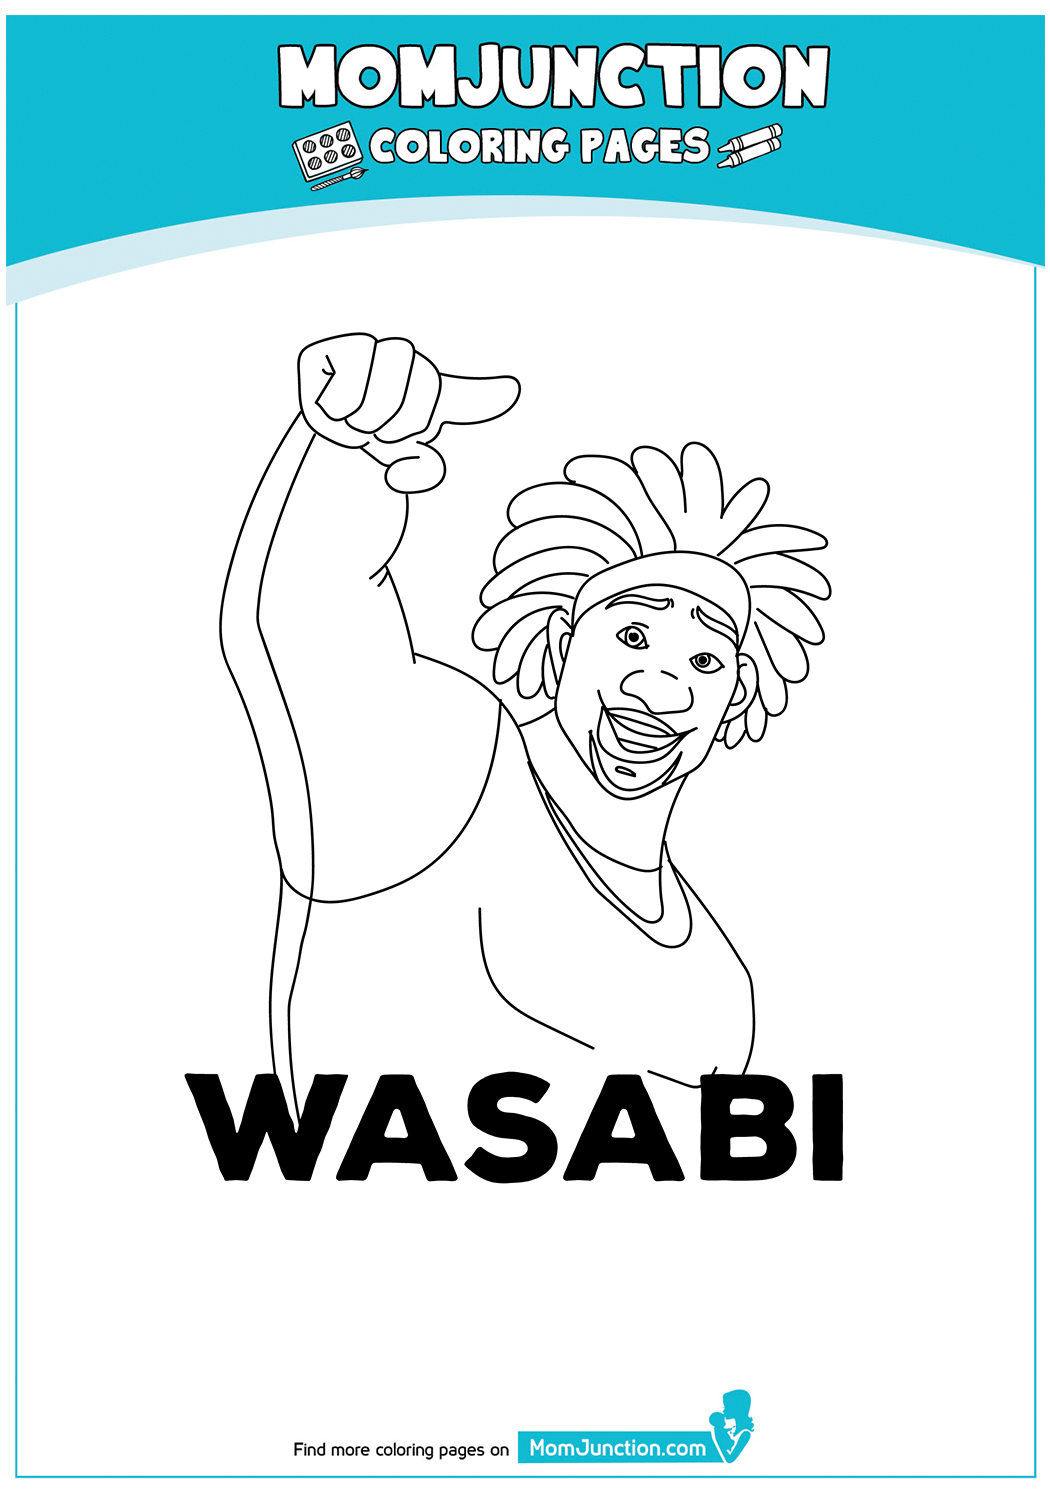 Wasabi-17